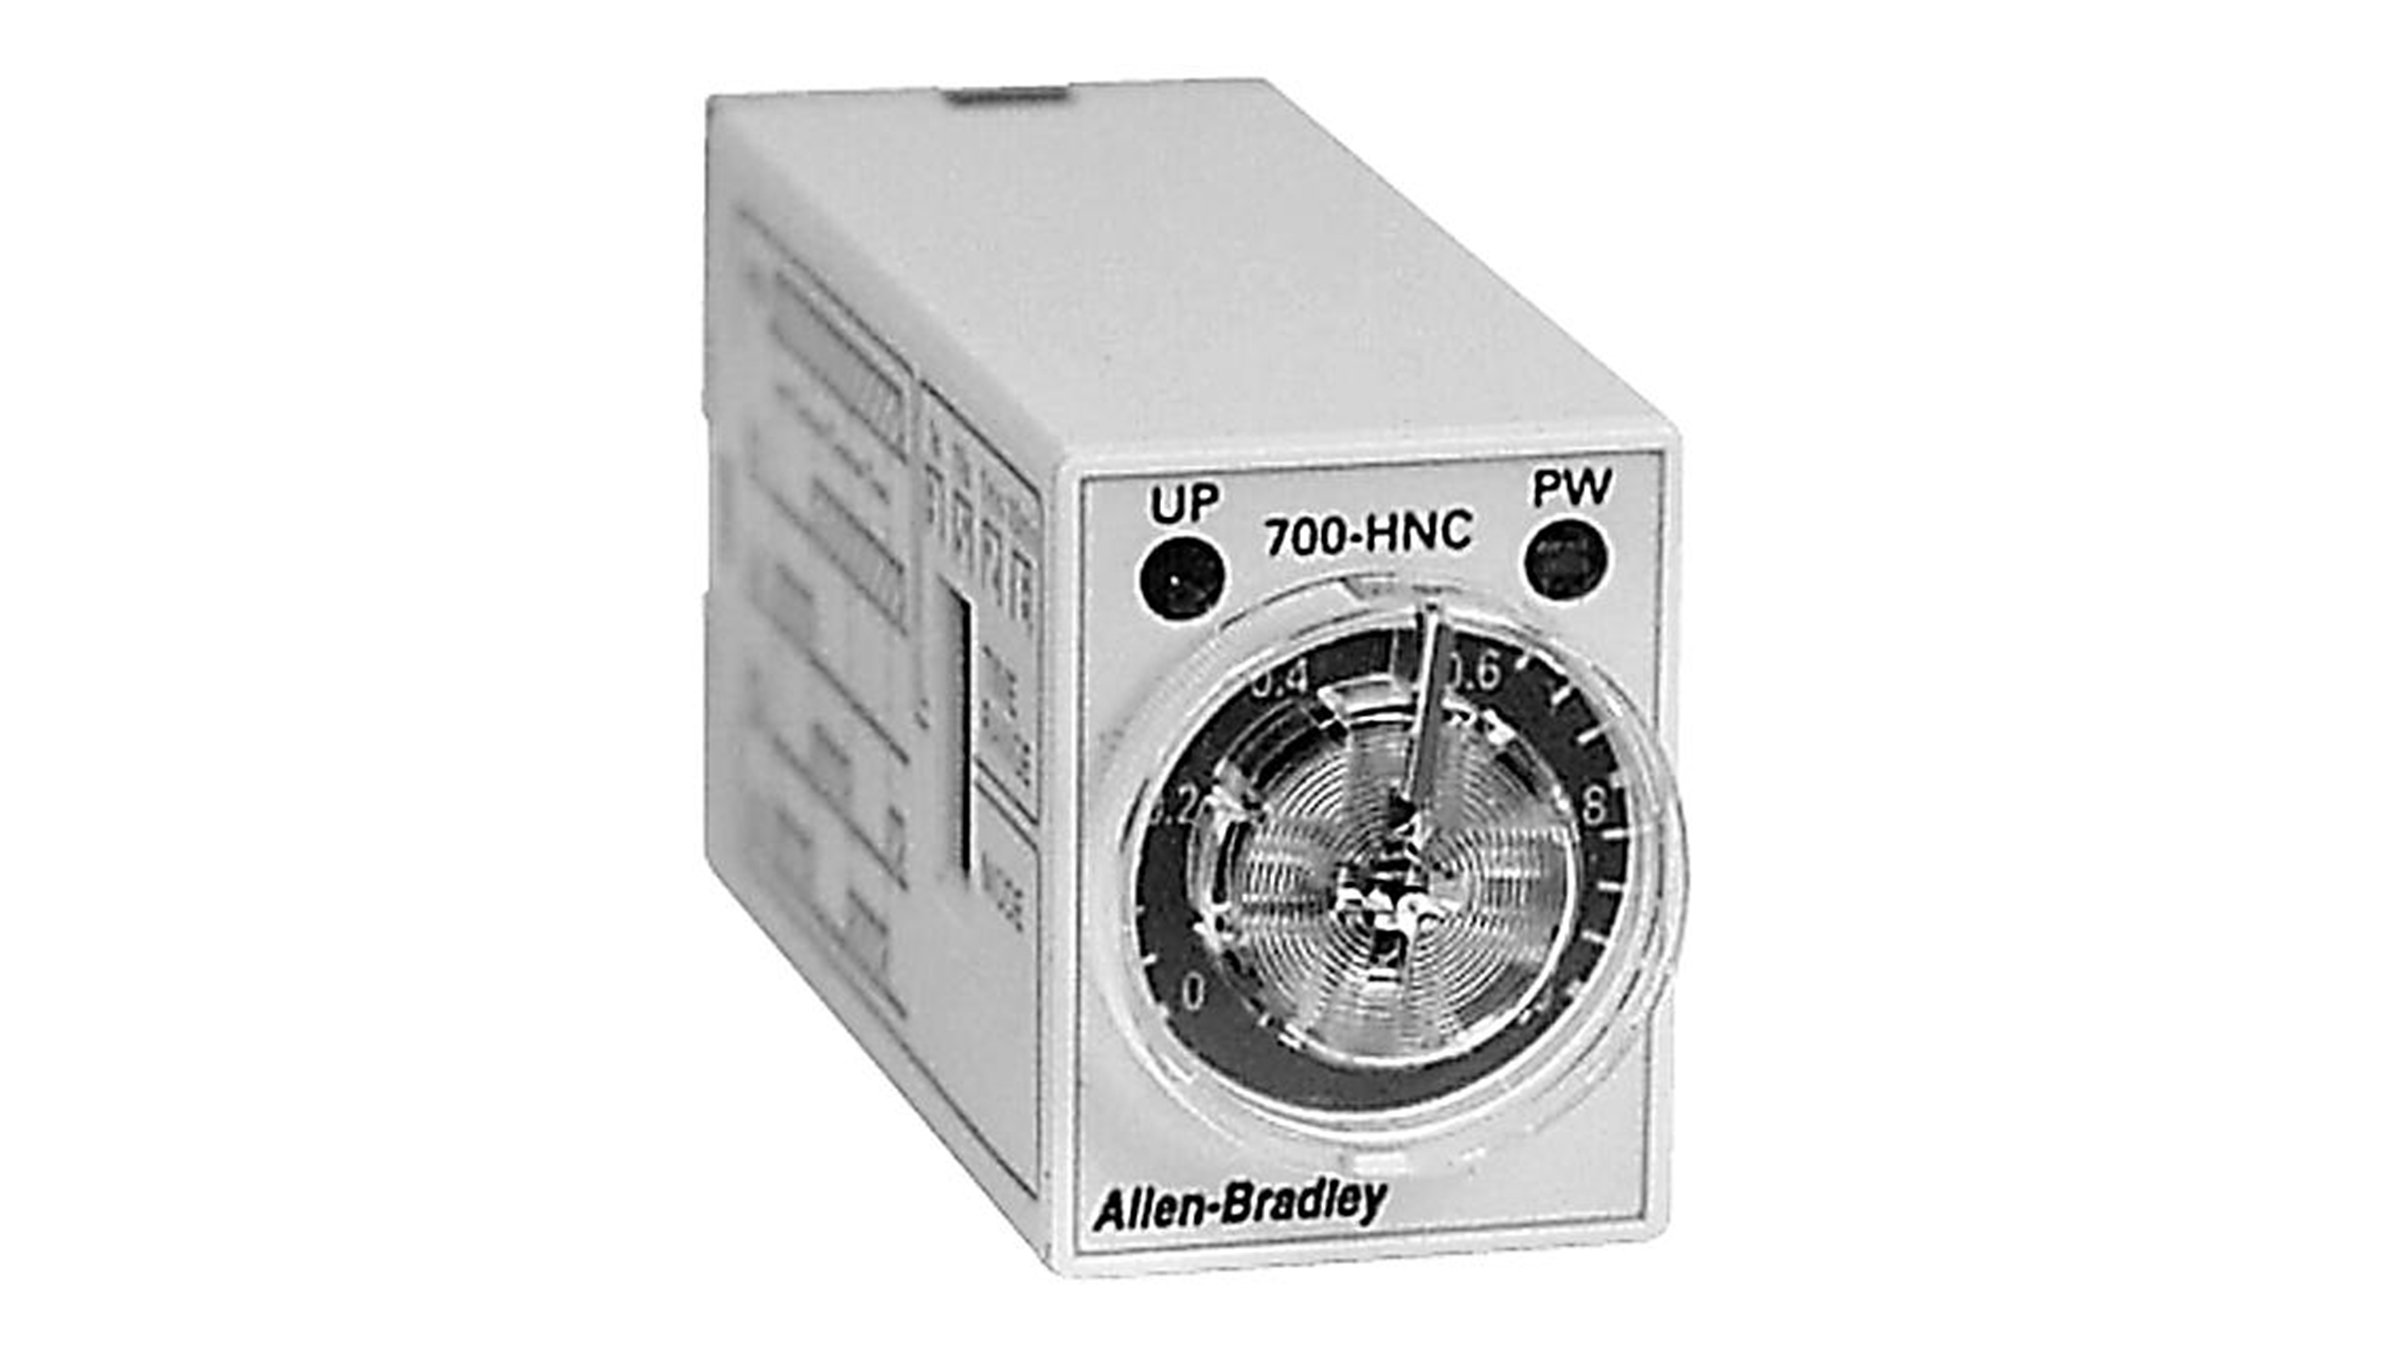 Os relés de temporização miniatura da Allen-Bradley cód. cat. 700-HNC são alguns dos menores relés de temporização disponíveis.